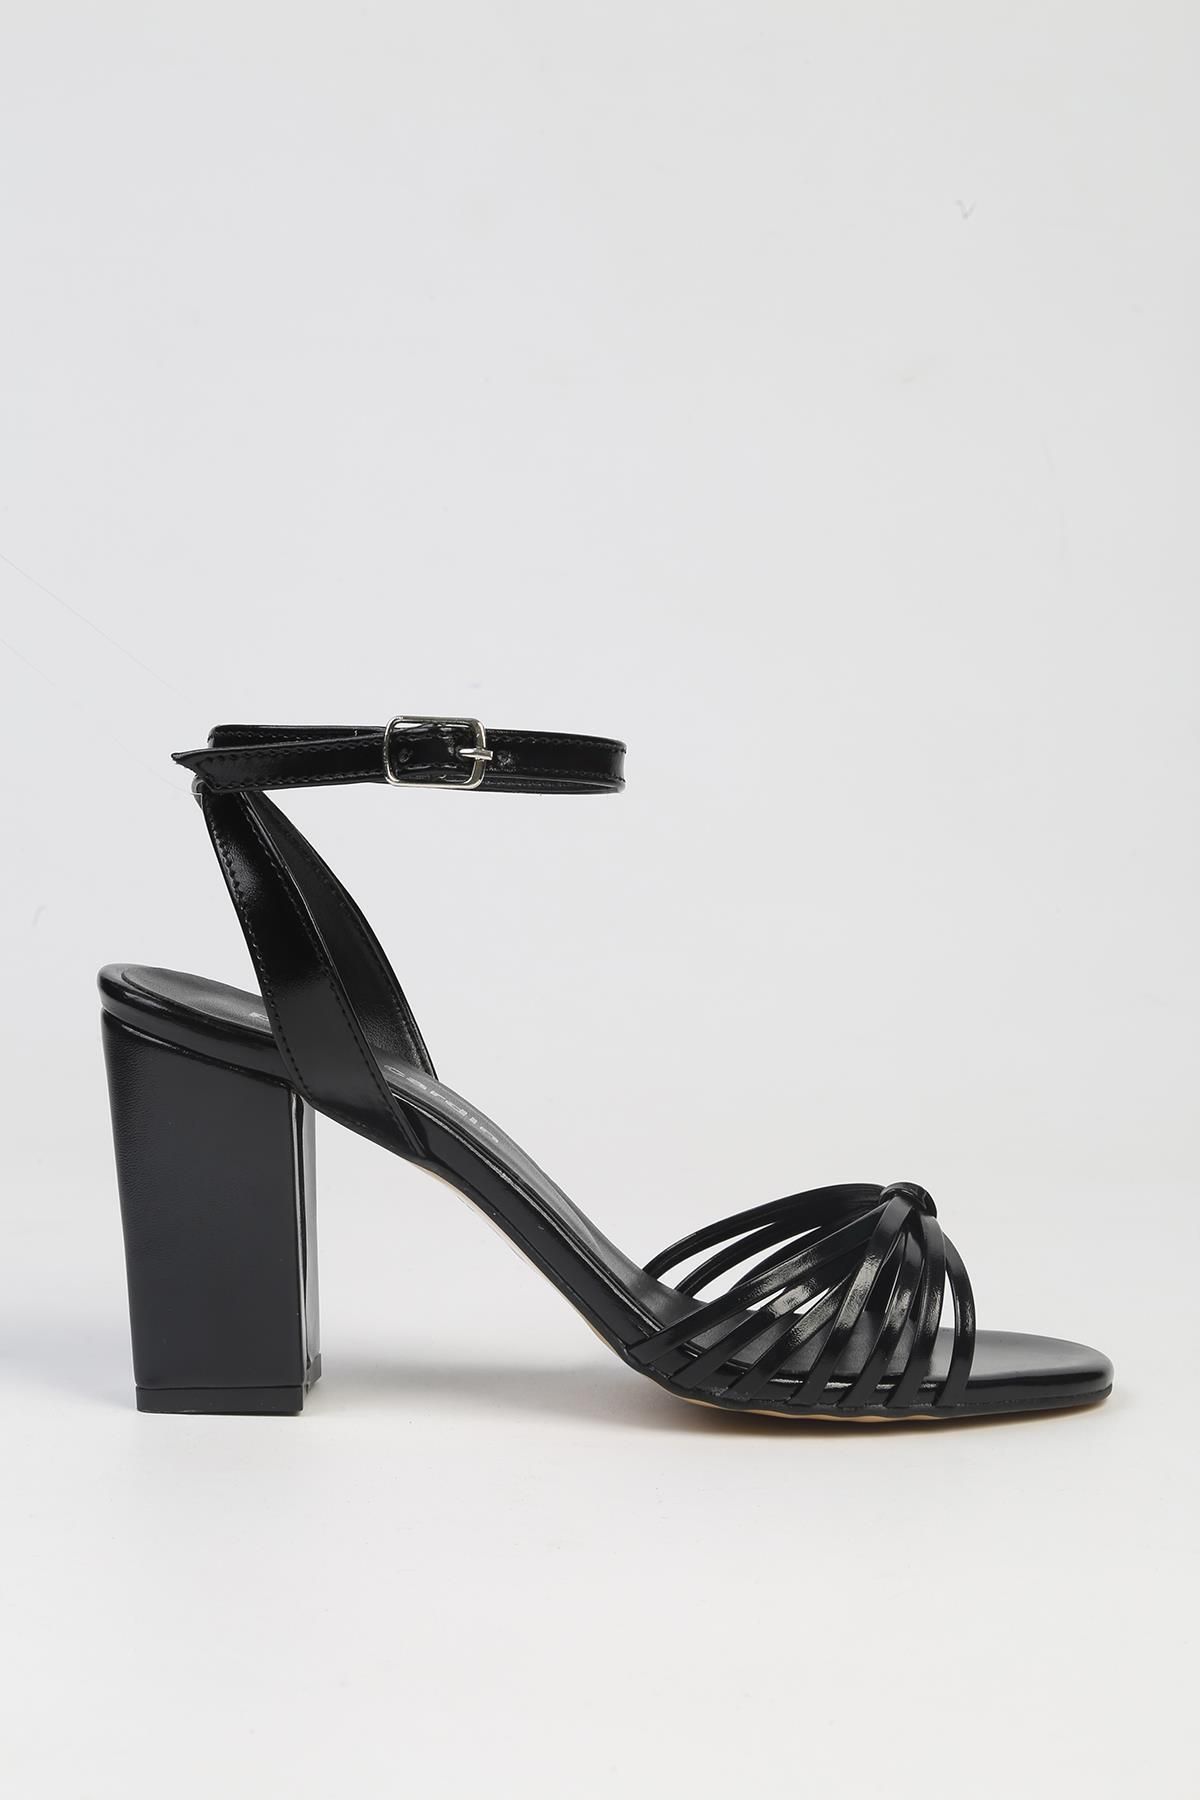 Pierre Cardin ® | PC-53057- 3959 Siyah-Kadın Topuklu Ayakkabı